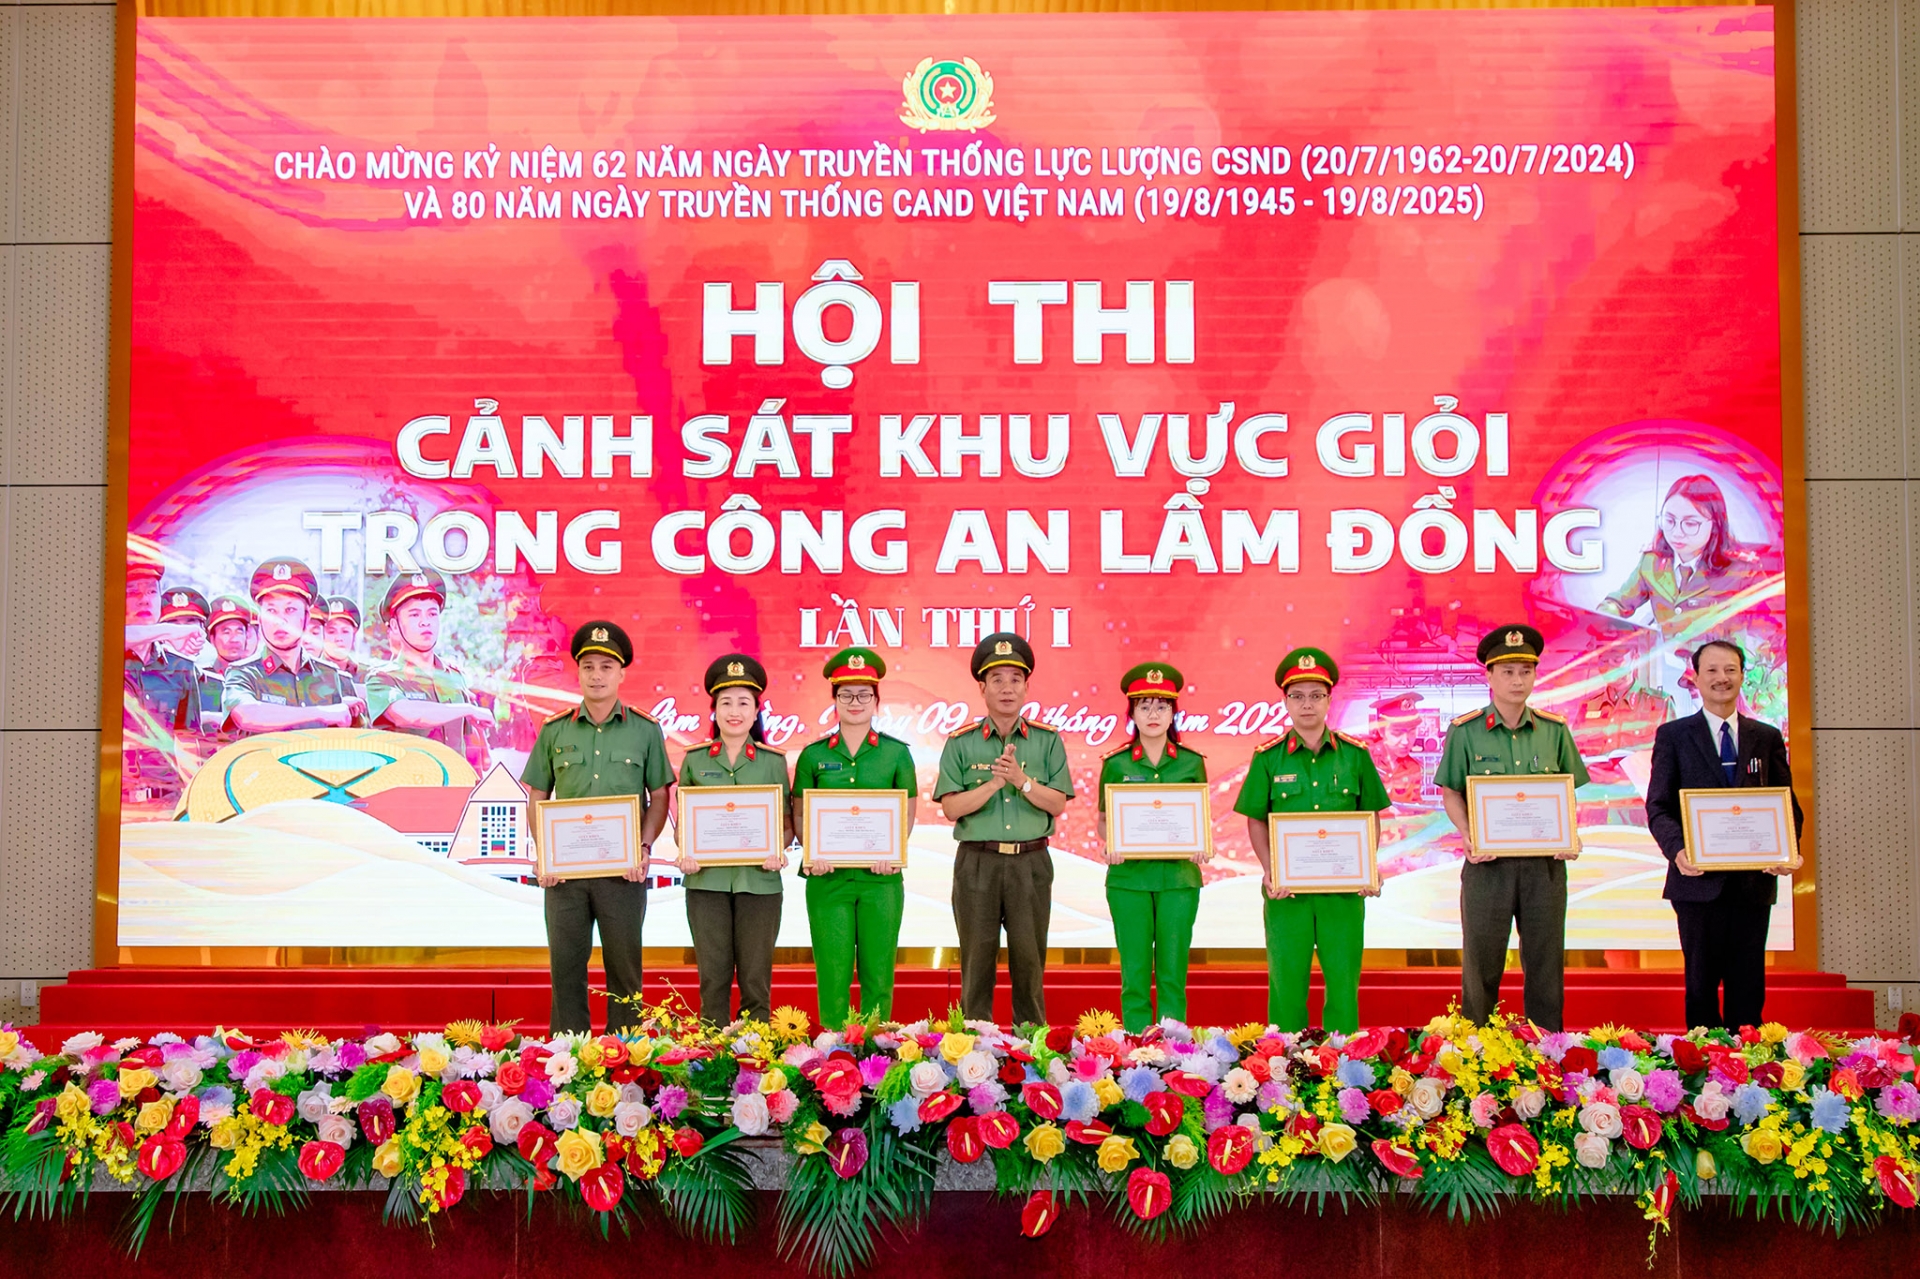 Đại tá Lê Hồng Phong - Ủy viên BCH Đảng bộ tỉnh, Phó Bí thư Đảny ủy, Phó Giám đốc Công an tỉnh trao Giấy khen của Giám đốc Công an tỉnh cho các cá nhân có thành tích xuất sắc